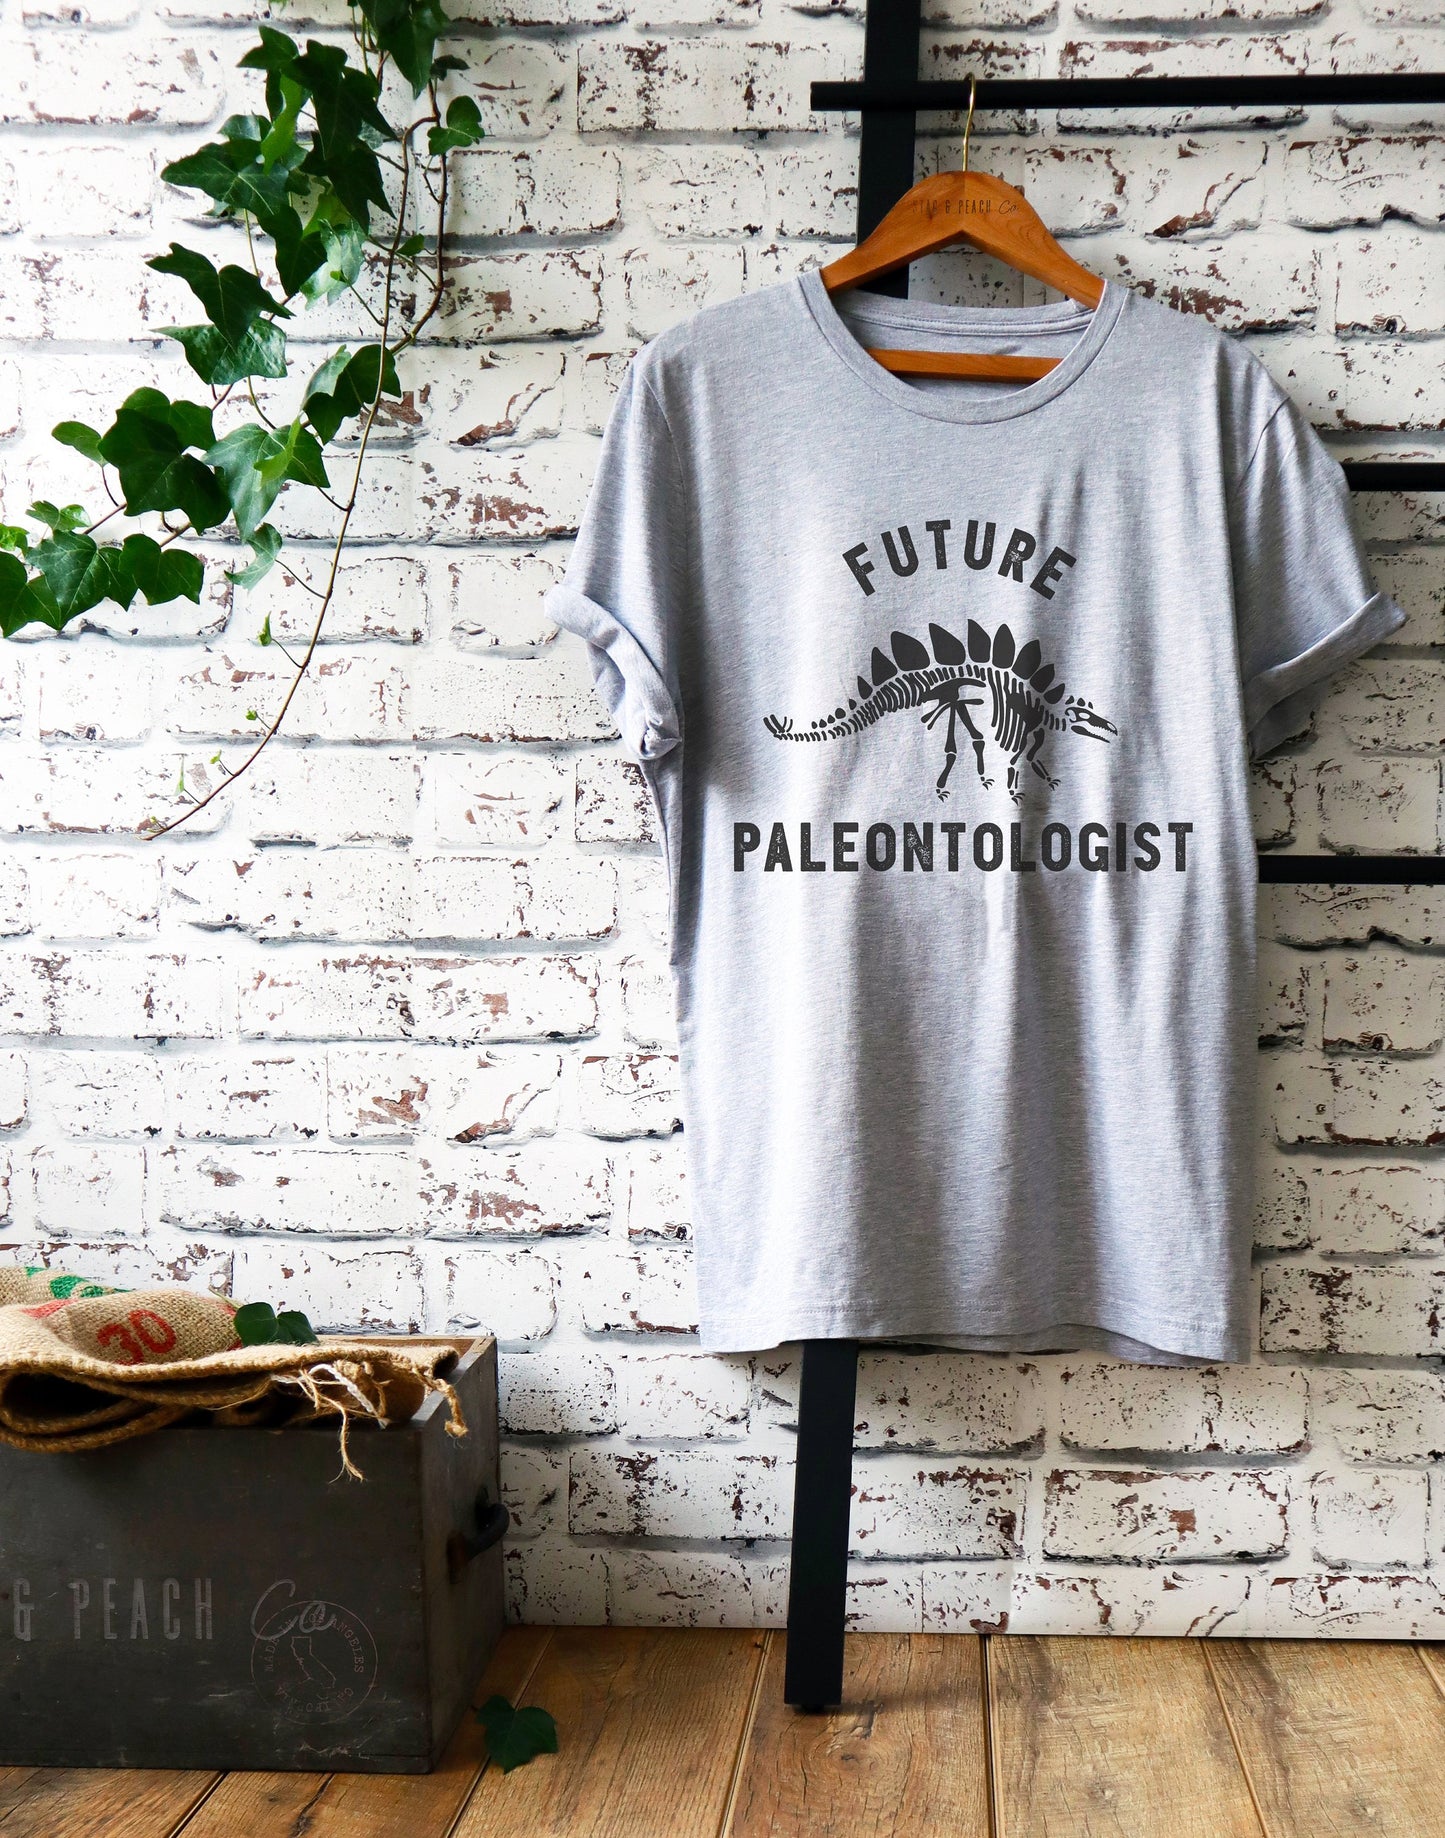 Future Paleontologist Unisex Shirt- Paleontology Shirt, Dinosaur Shirt, Dinosaurus Shirt, Geology Shirt, Geologist Shirt, Palaeontology Gift